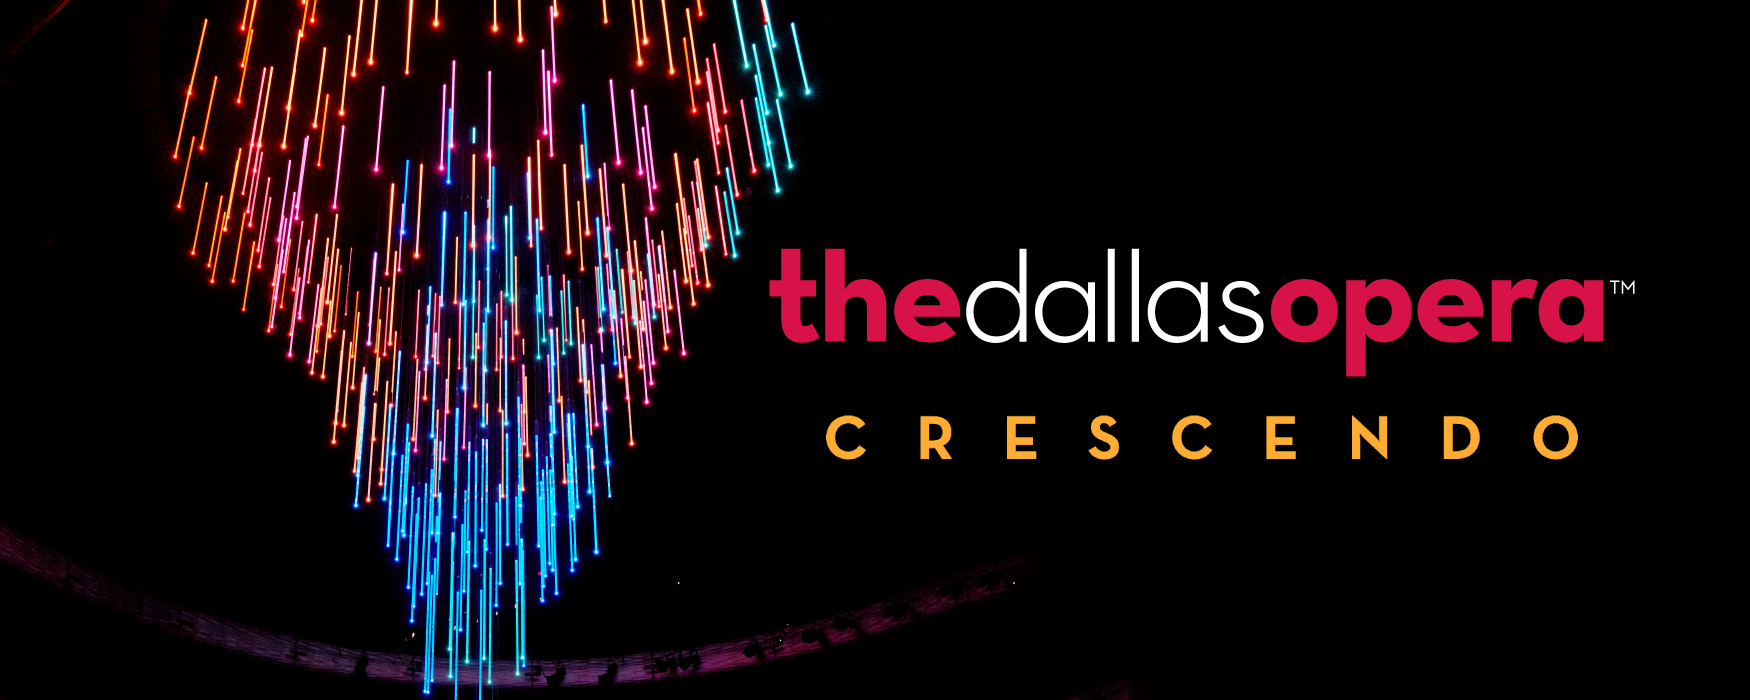 The Dallas Opera Crescendo program for ages 21-45